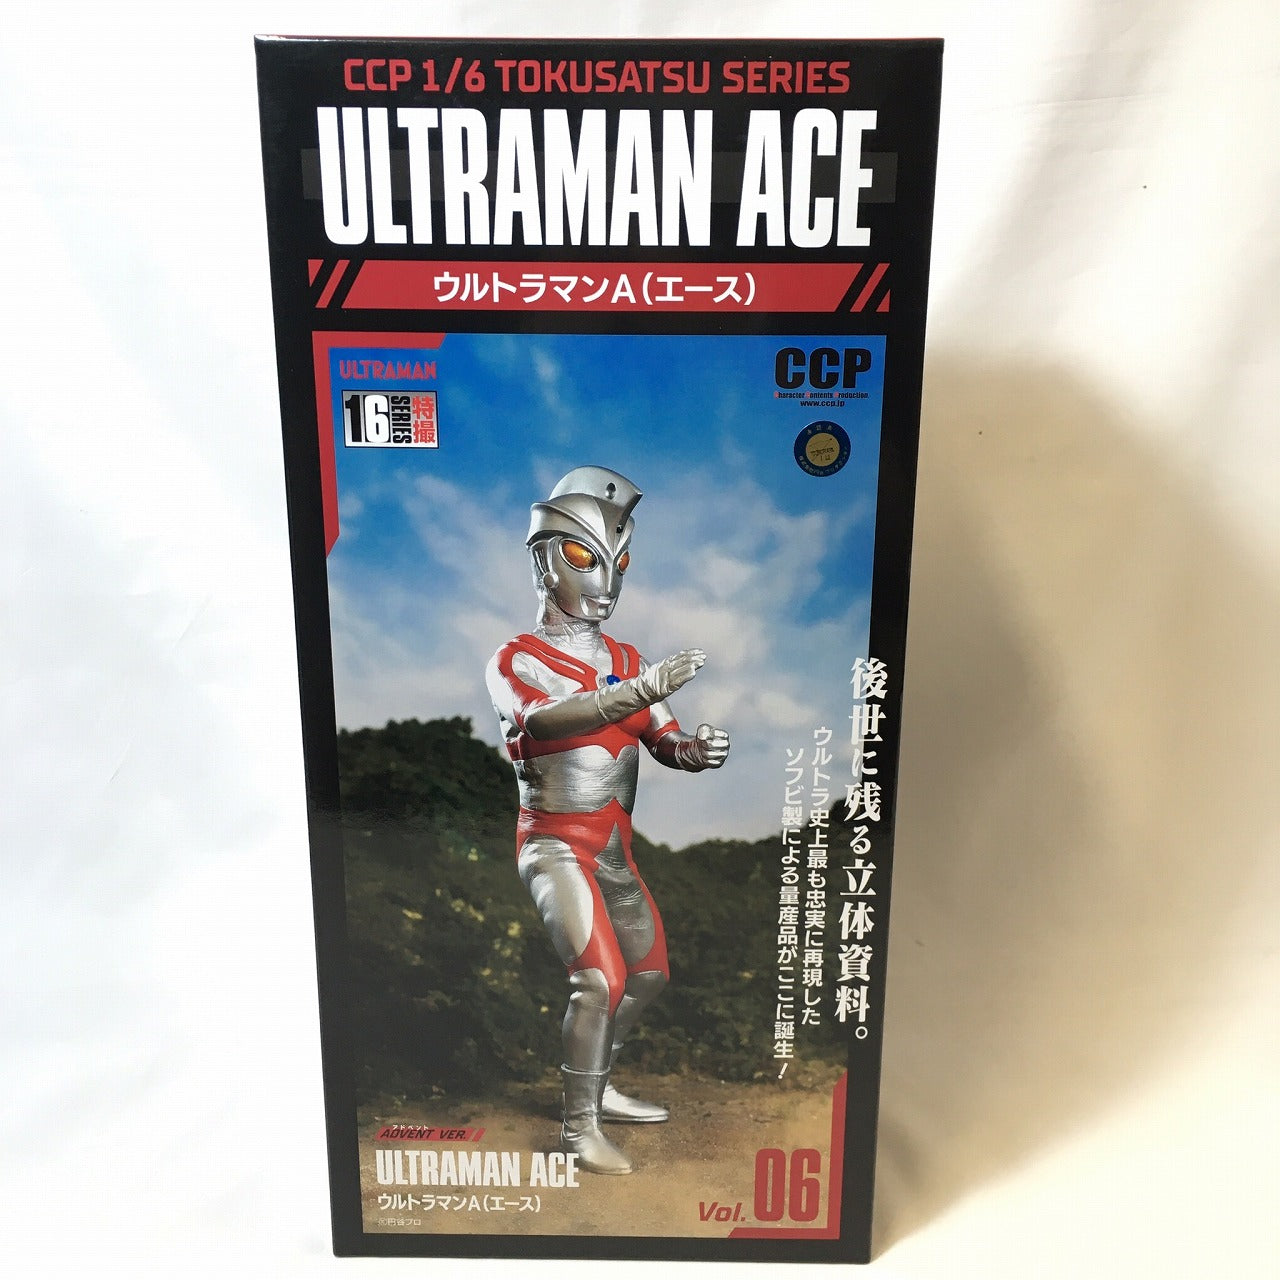 CCP 1/6 Tokusatsu Series Vol.06 Ultraman Ace Advent Ver. [Reprint], animota